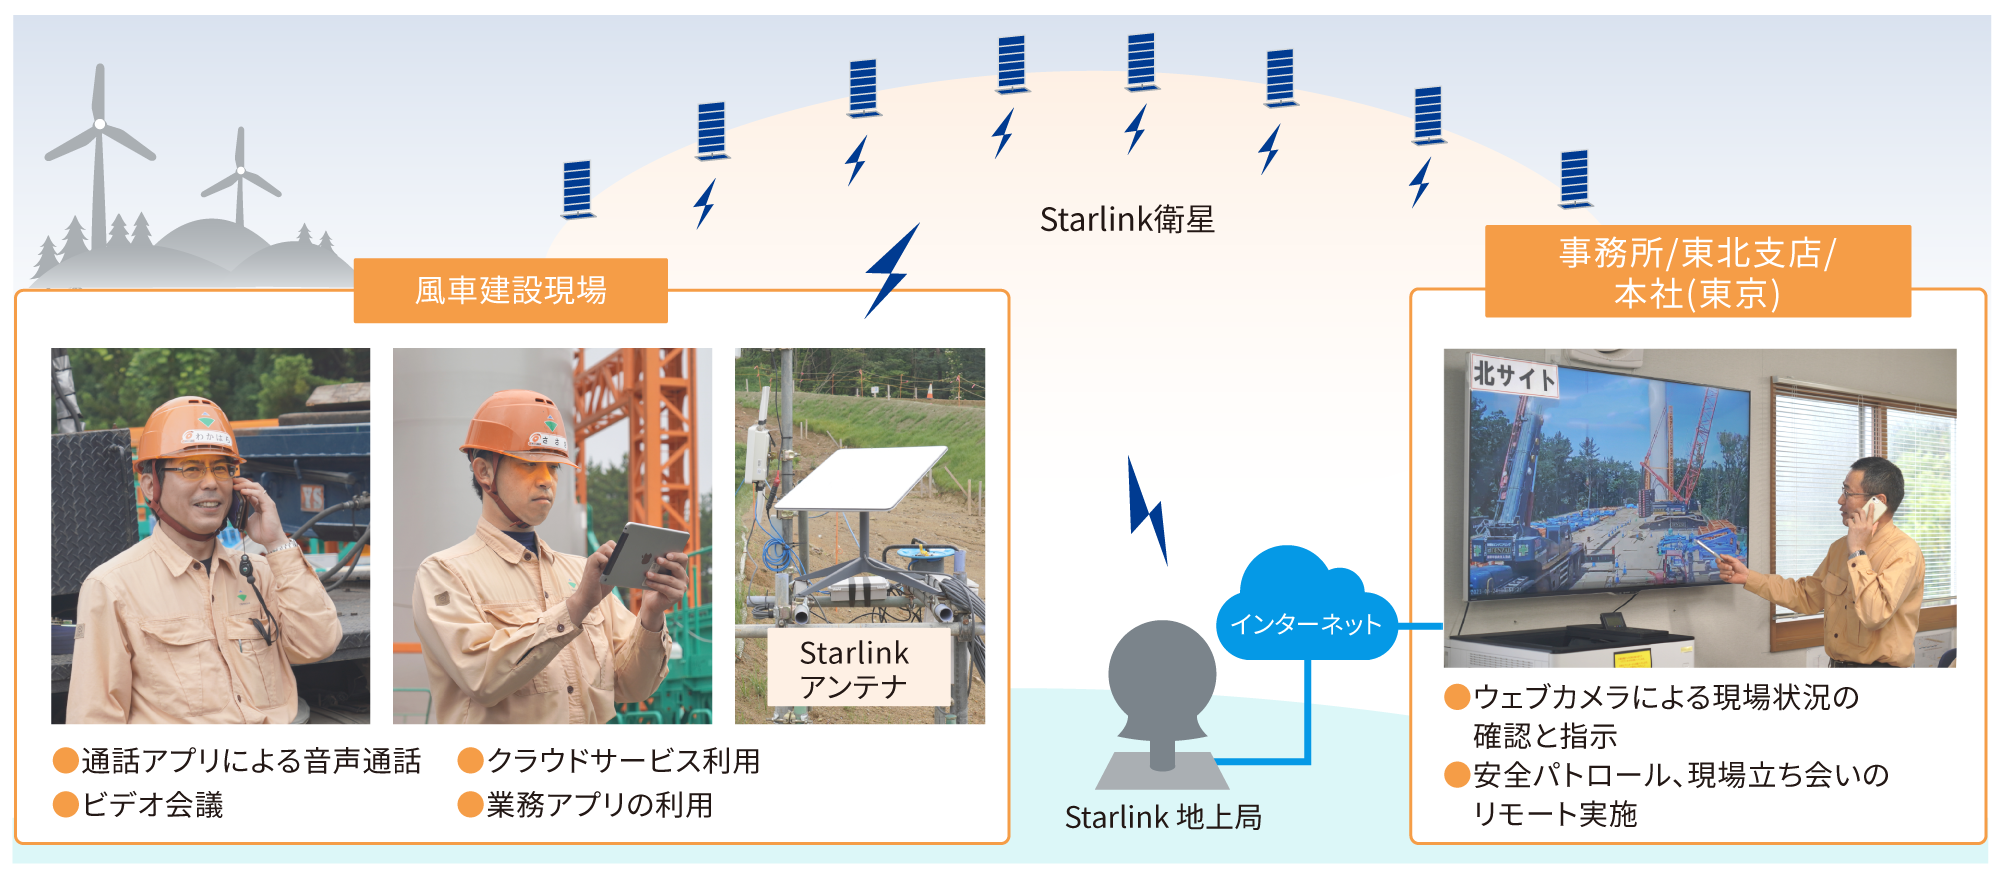 Starlink衛星からのStarlinkアンテナやStarlink地上局とつながり、風車建設現場や事務所/東北支店/本社(東京)などで活用されている